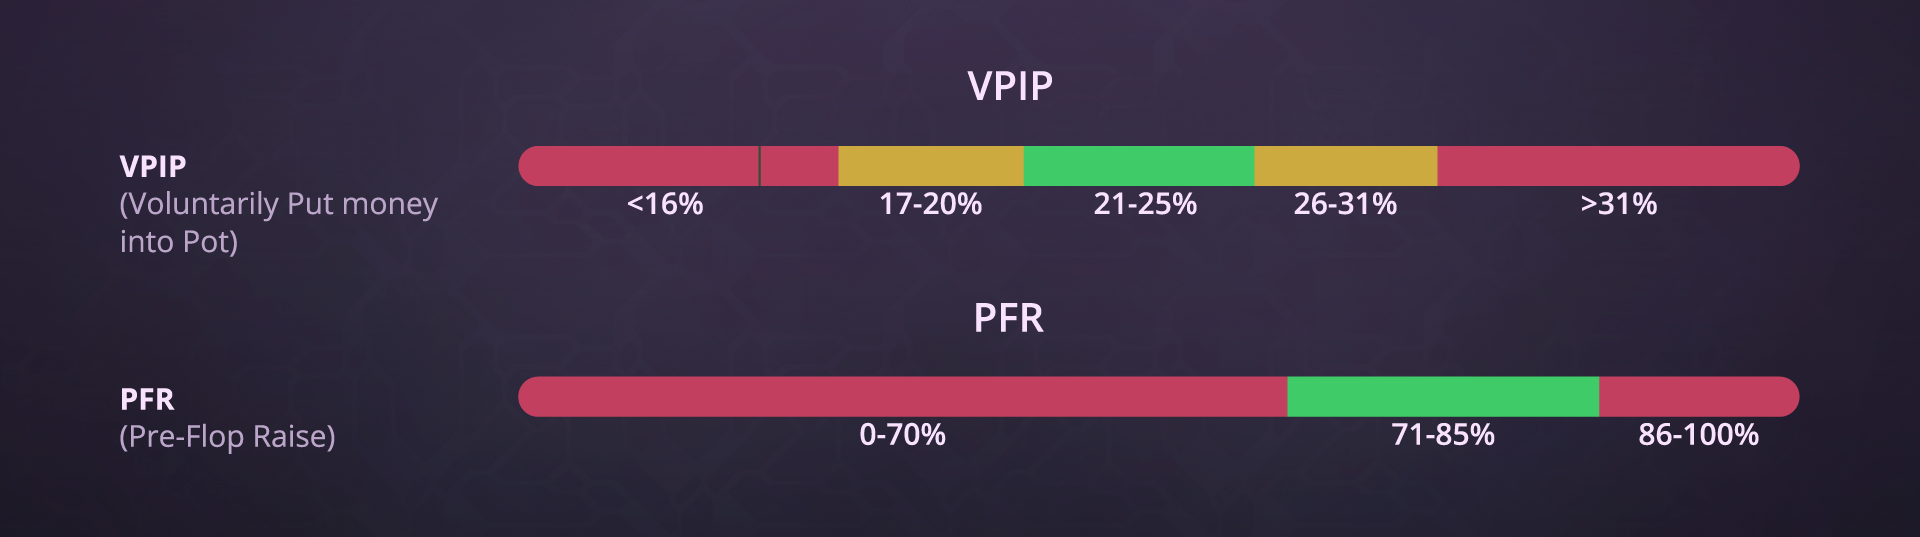 VPIP & PFR Ideal Ranges